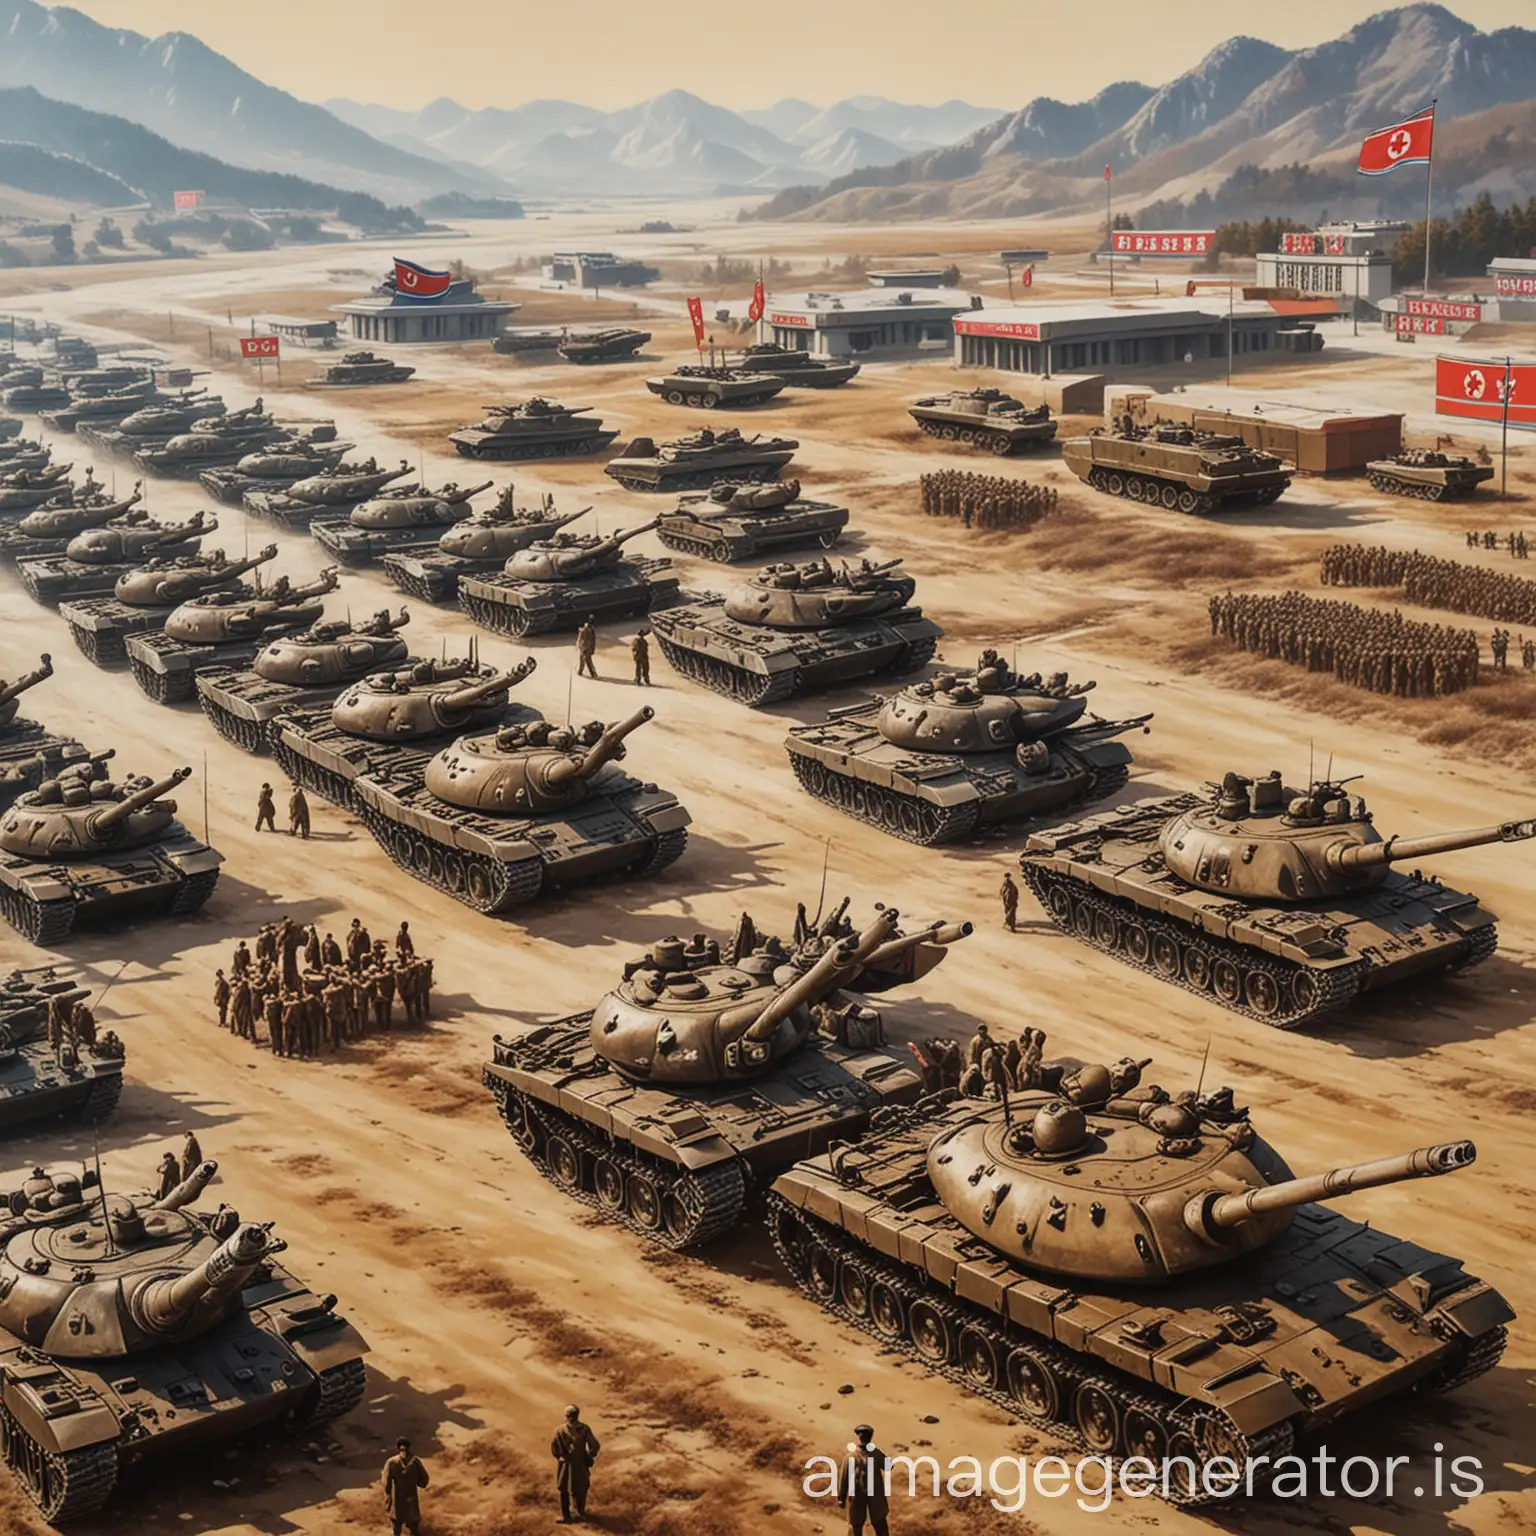 North Korea propaganda poster with many tanks